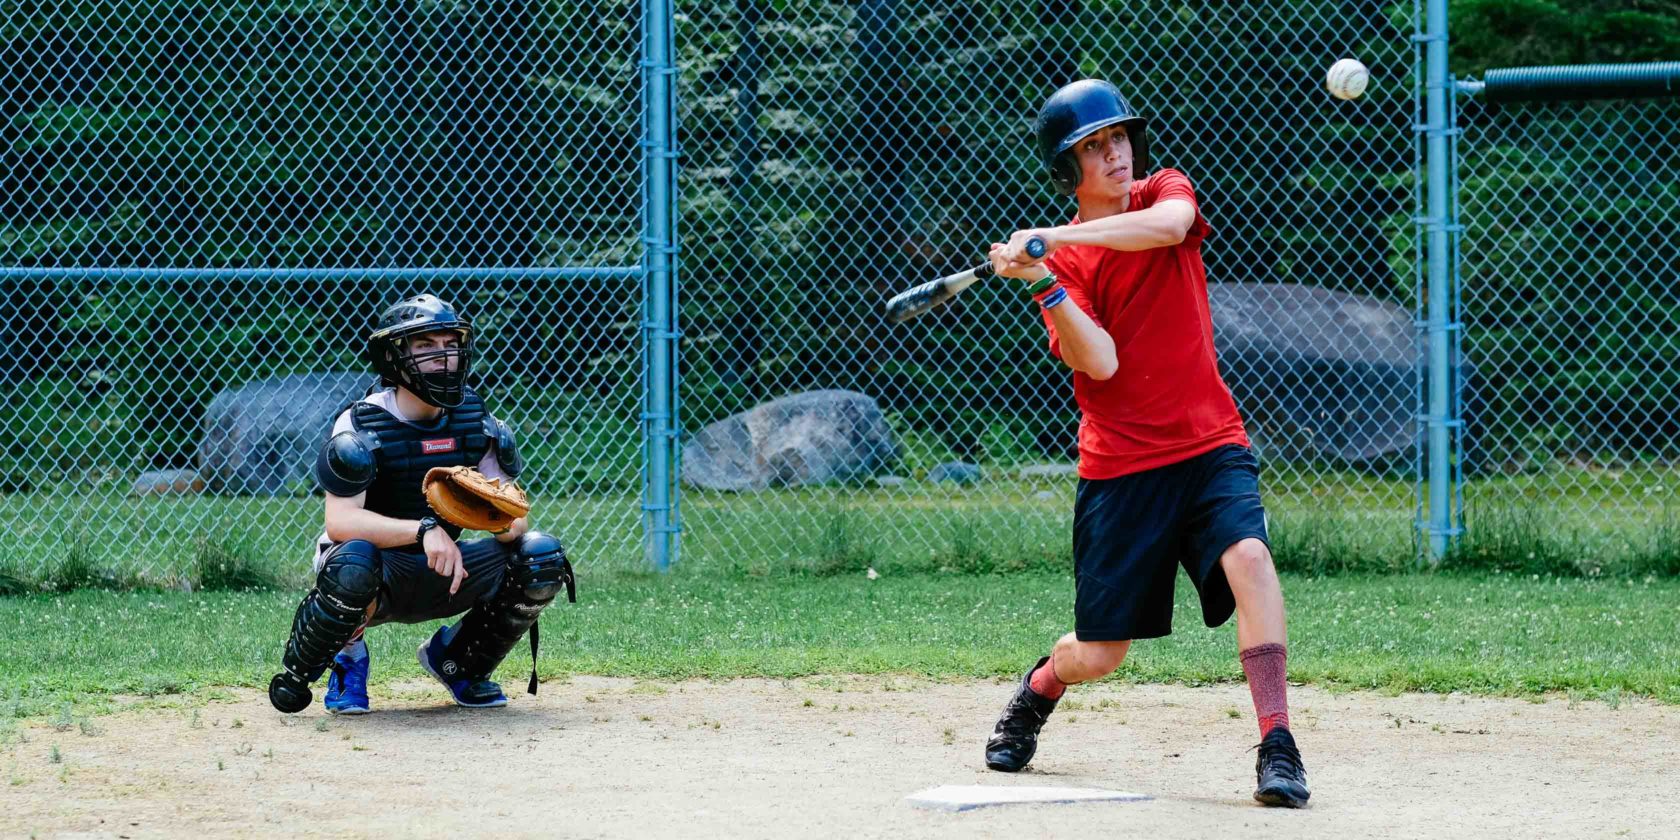 camper hitting a baseball